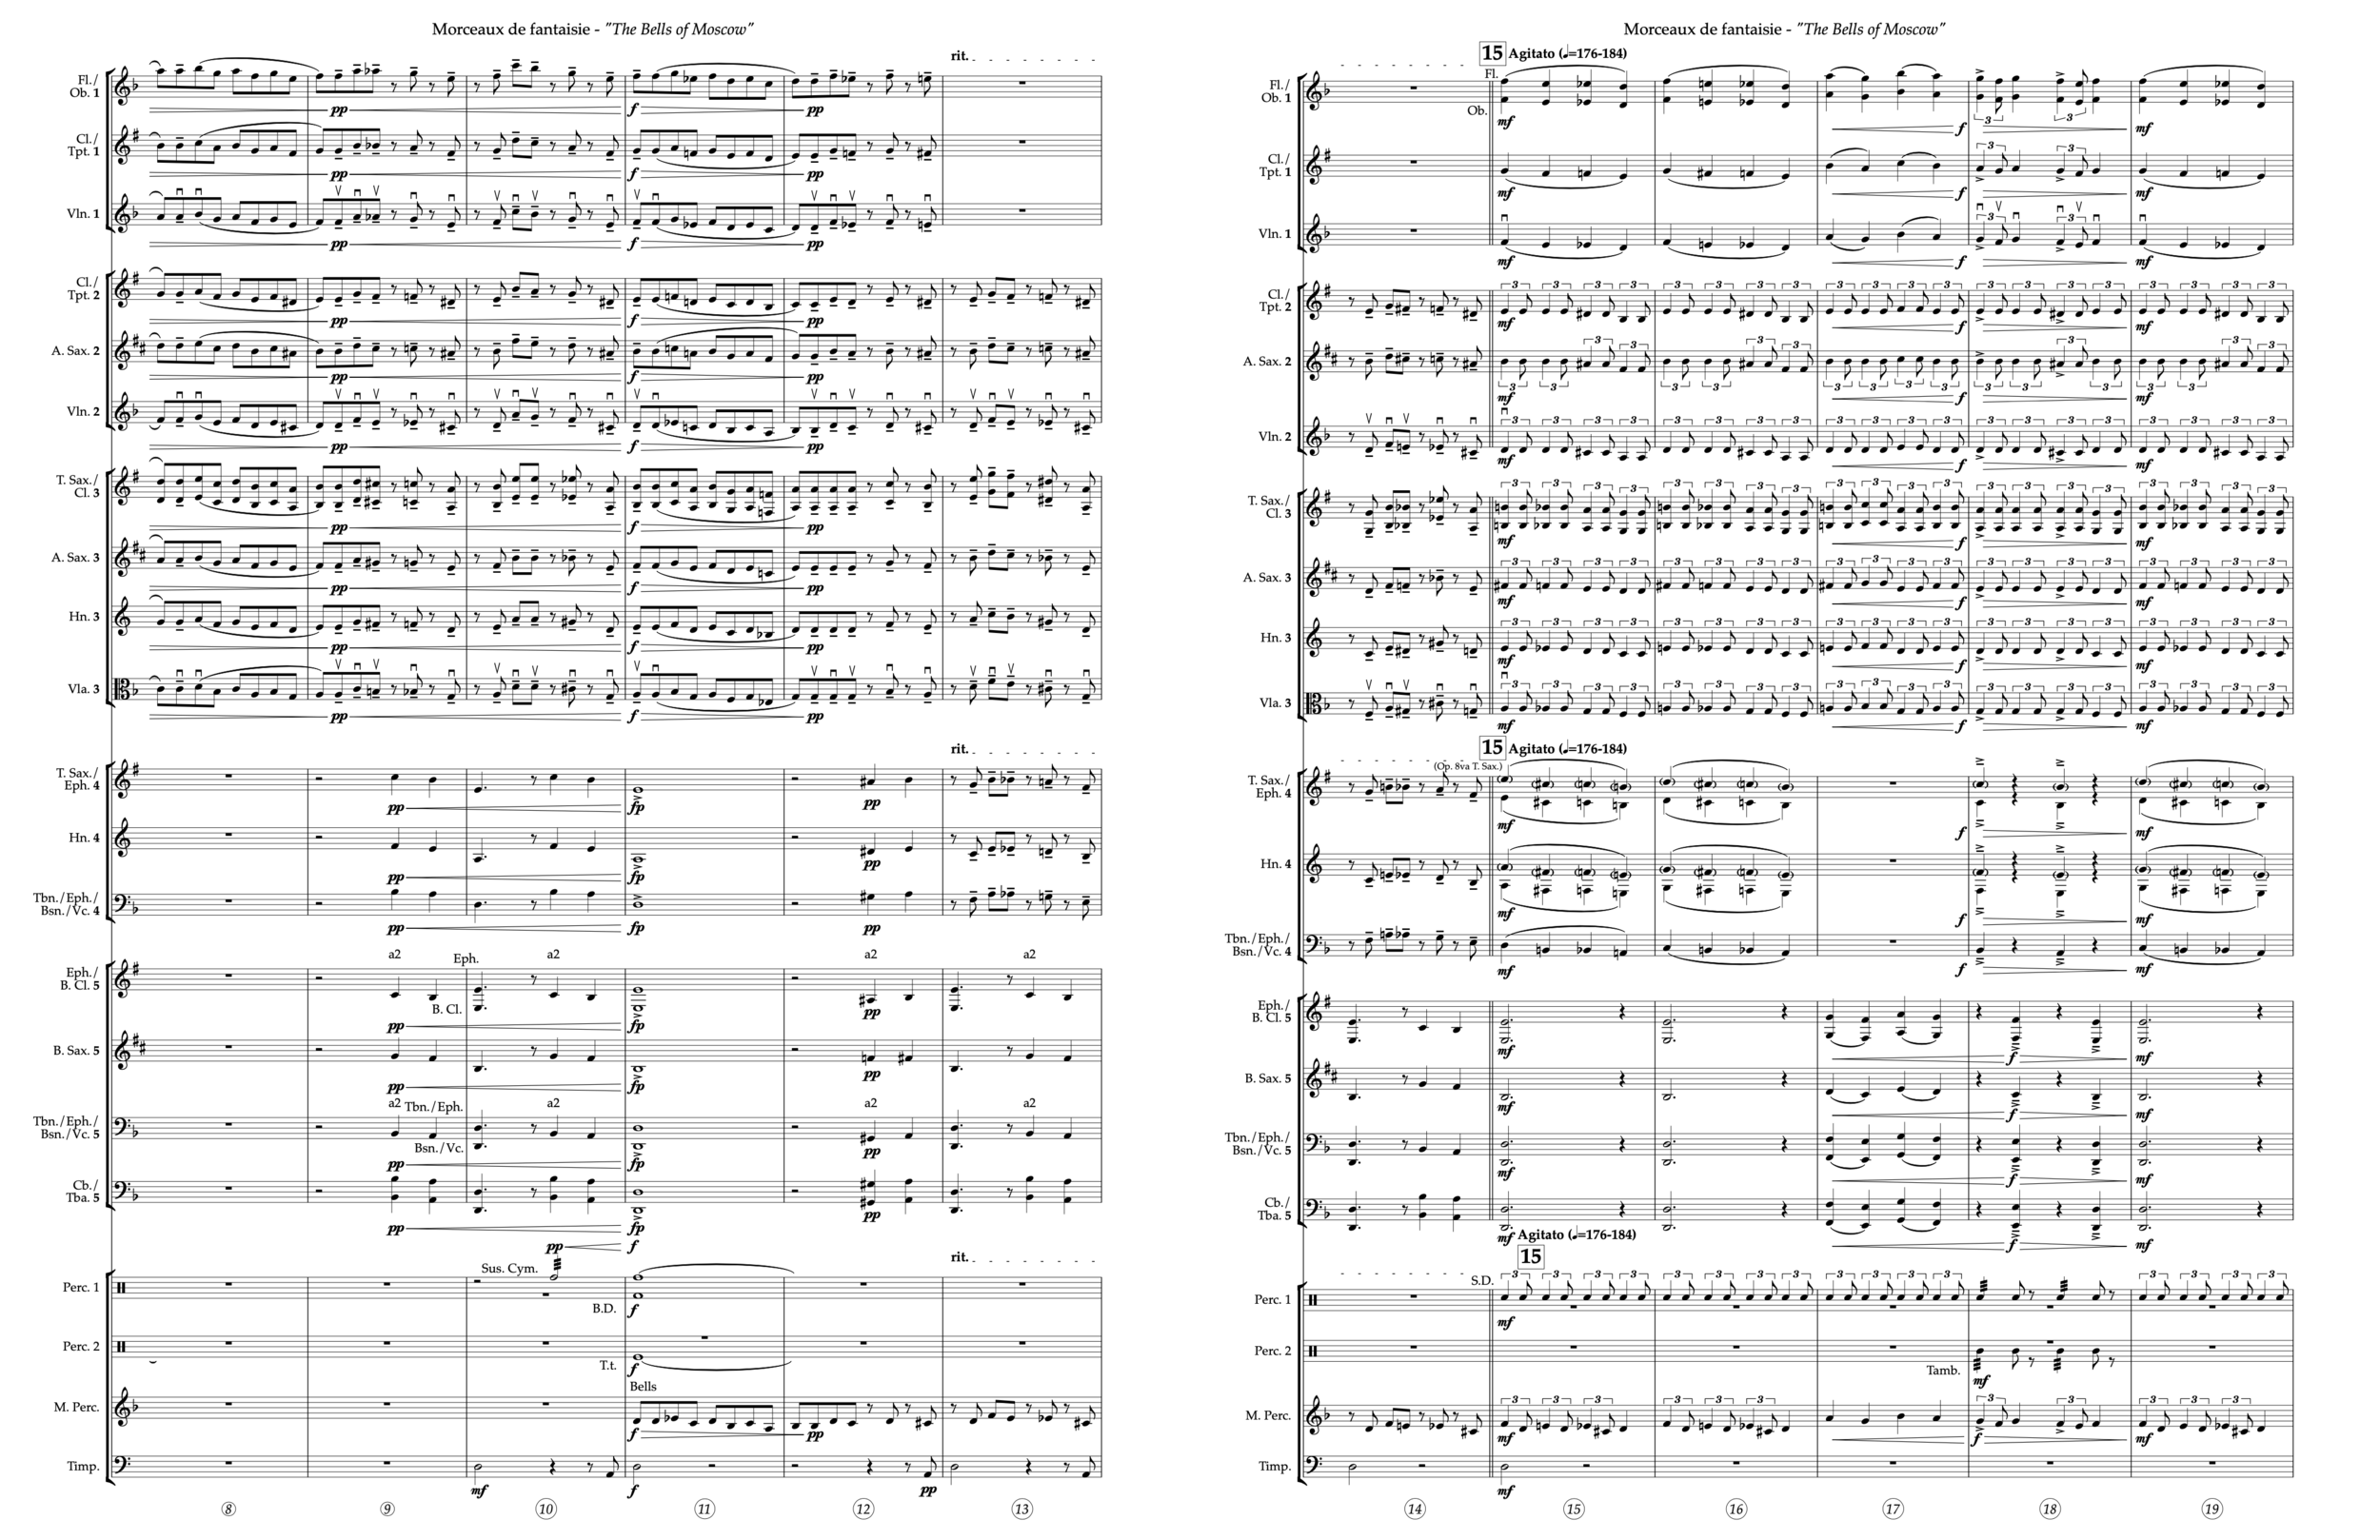 Fanfare pour pre´ce´der La Pe´ri (arr. for string orchestra) (arr. Ian  Deterling) Sheet Music, Ian Deterling